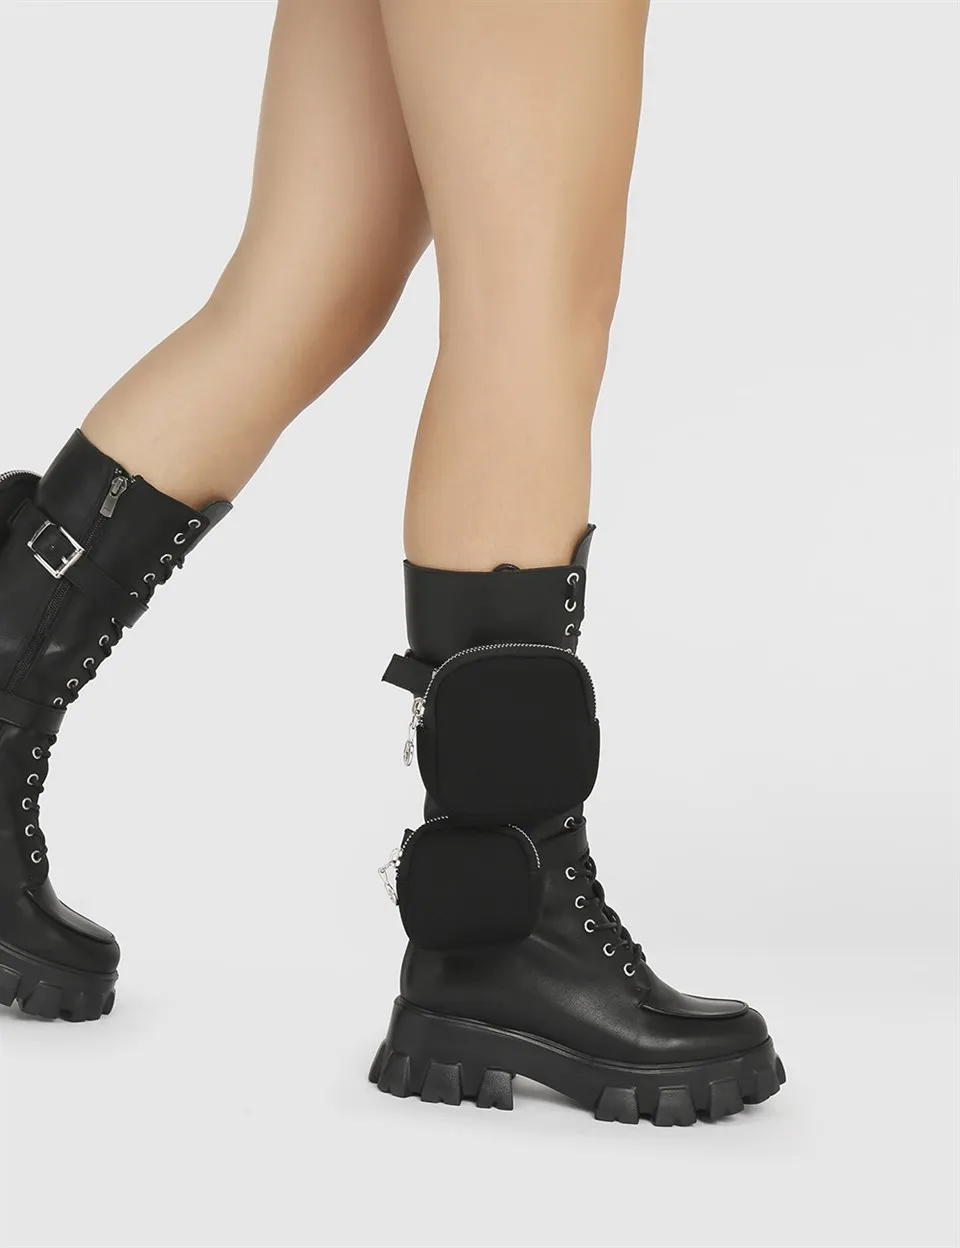 

Женские высокие ботинки ILVi из натуральной кожи ручной работы, черные кожаные туфли, осень/зима 2020